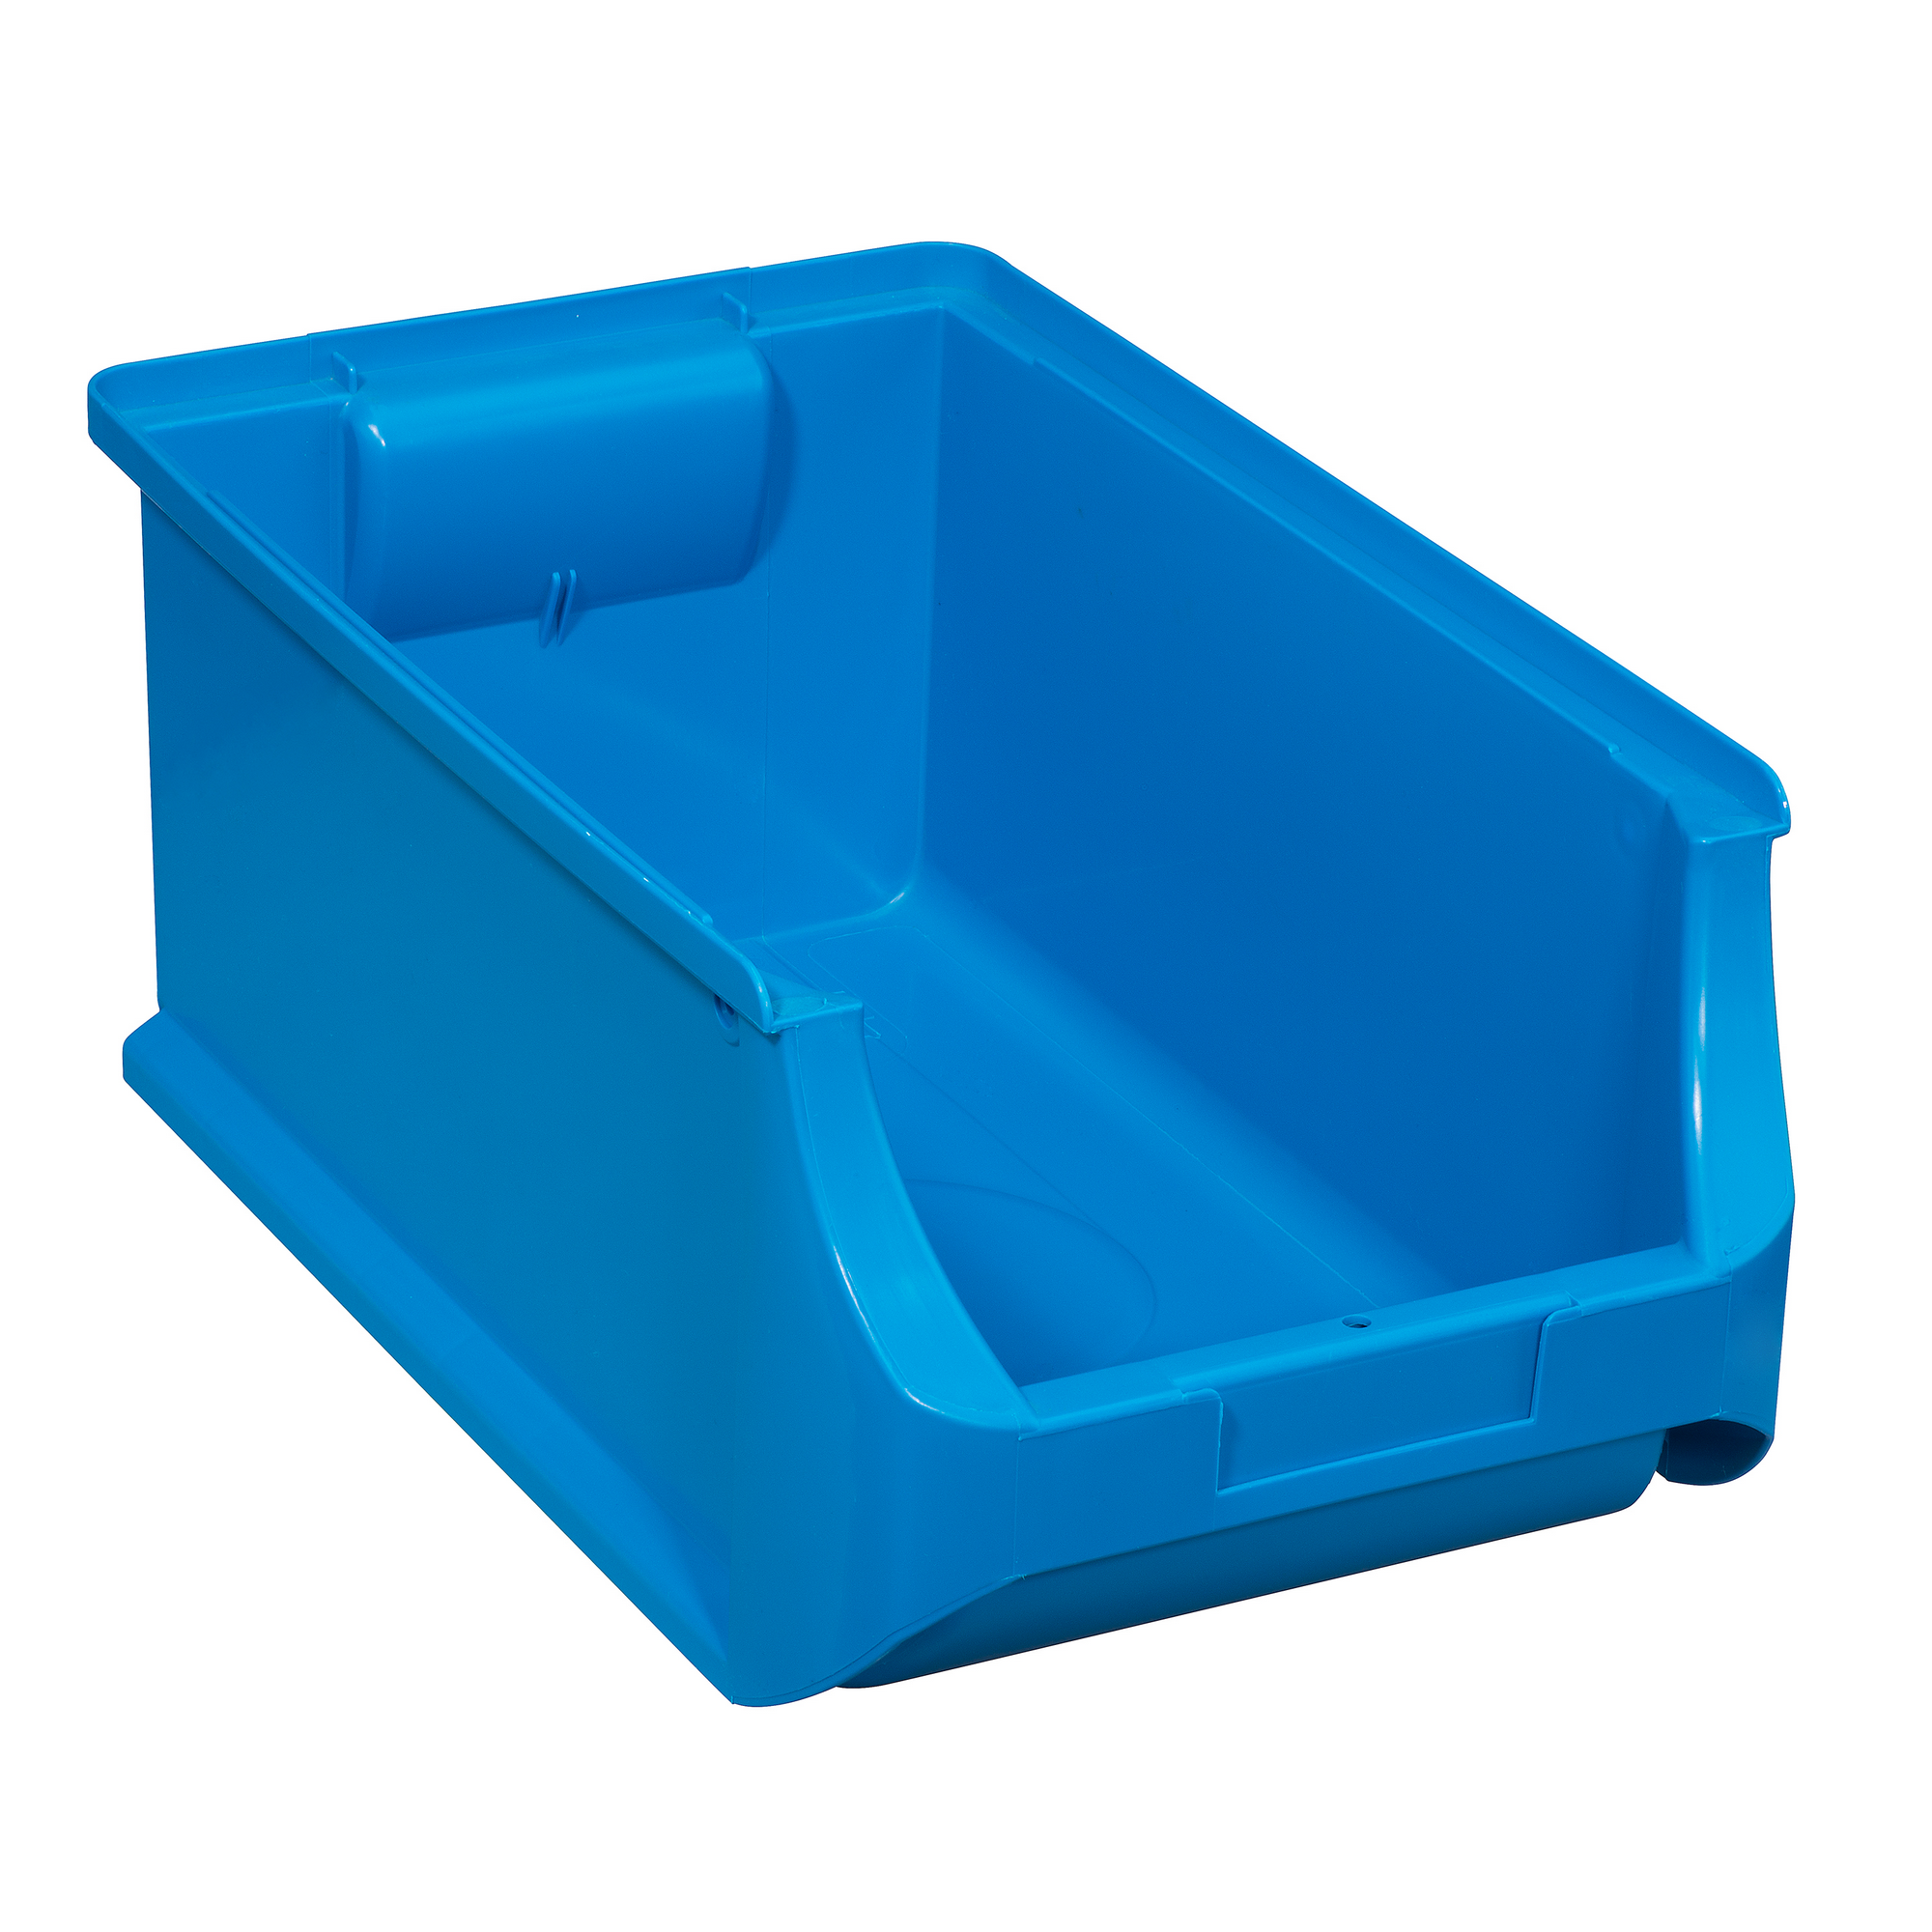 ProfiPlus Stapelsichtbox 'Box 4' blau 35,5 x 20,5 x 15 cm + product picture